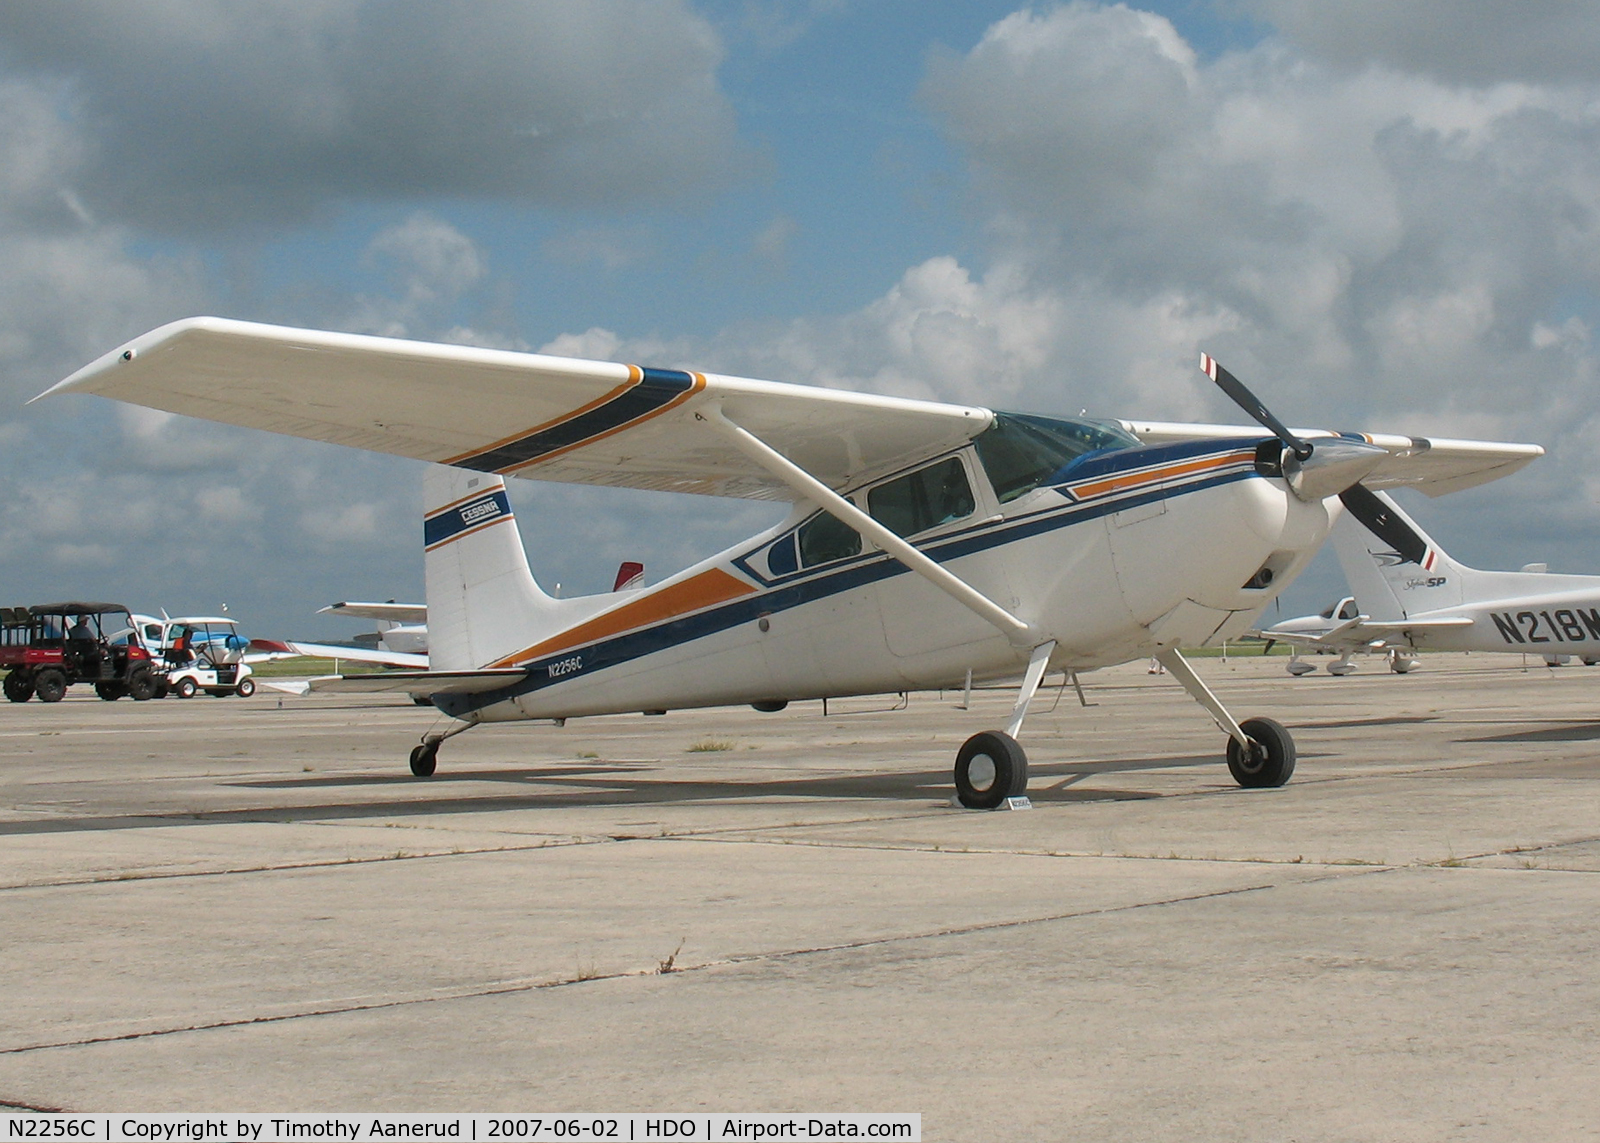 N2256C, 1953 Cessna 180 C/N 30556, 1953 Cessna 180, c/n 30556, The EAA Texas Fly-In